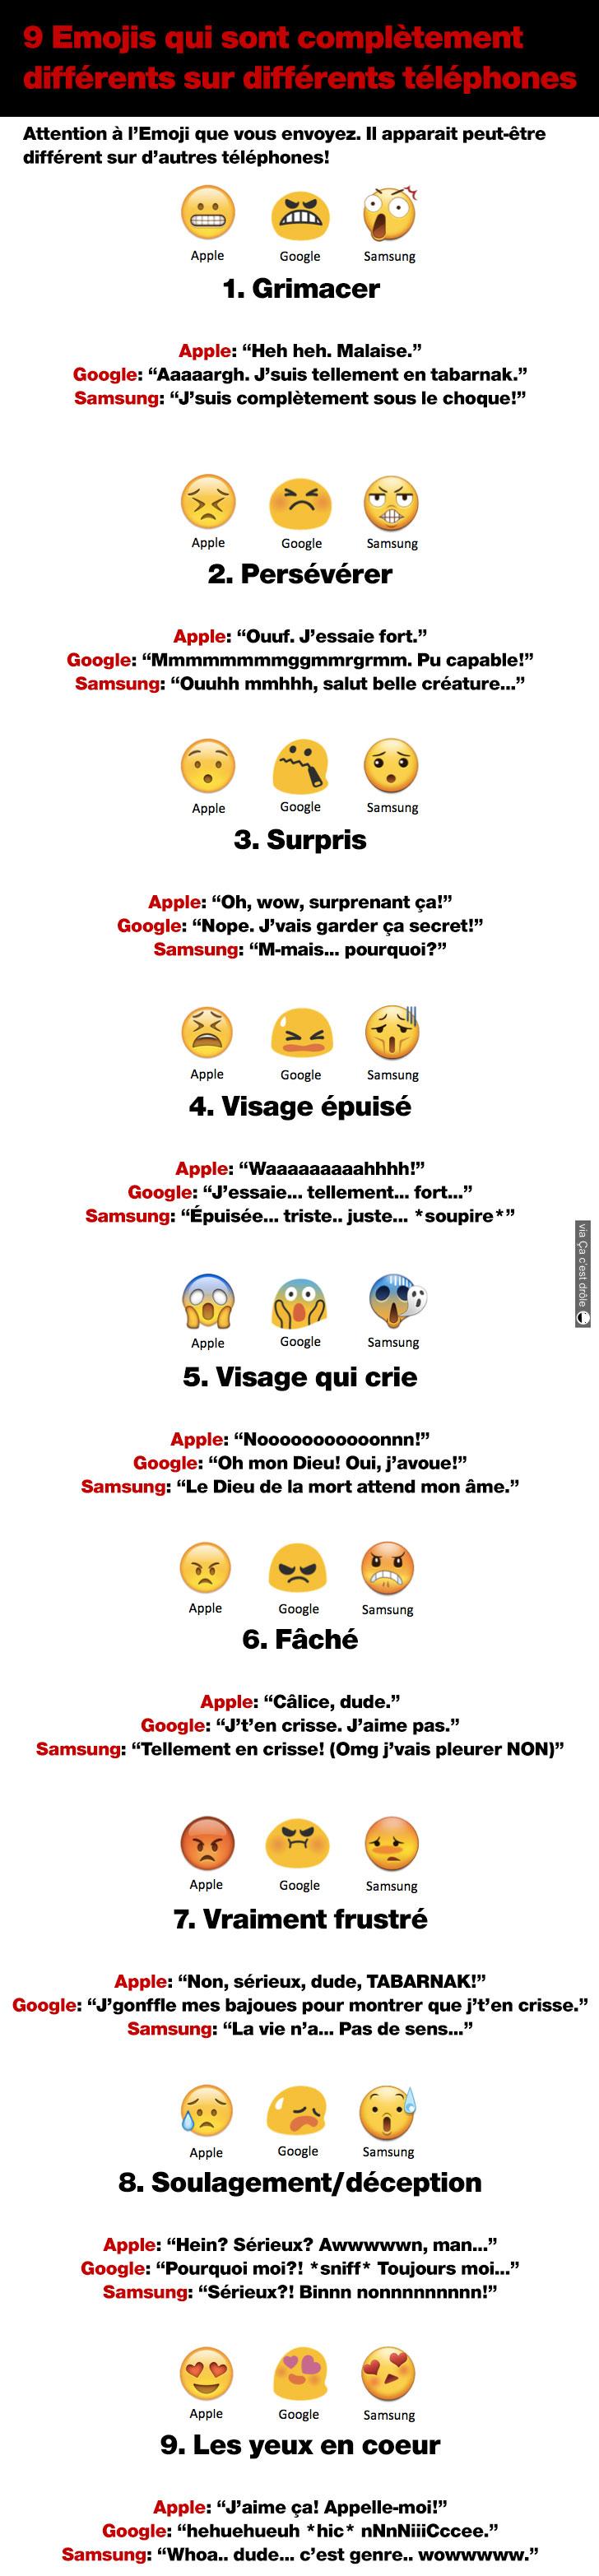 9 Emojis complètement différents sur d'autres téléphones